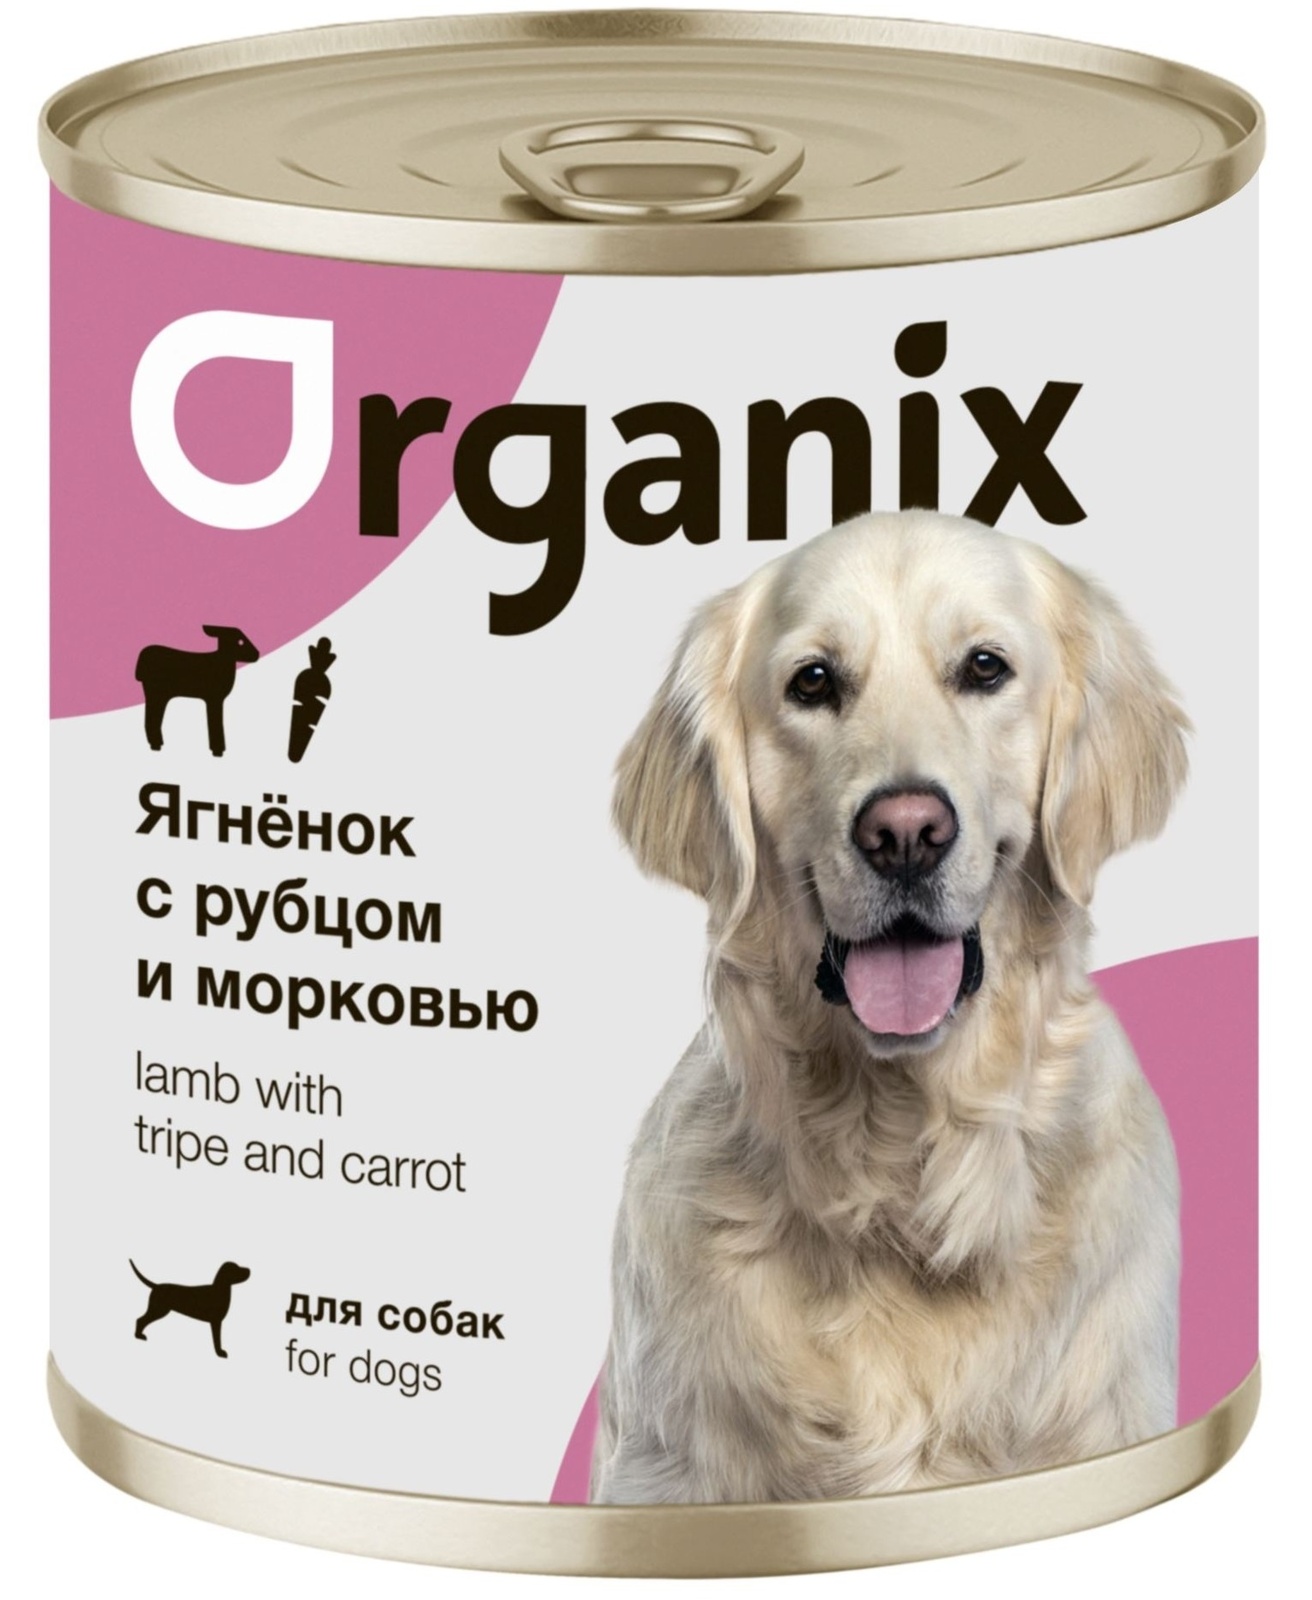 Organix консервы Organix консервы для собак Ягненок с рубцом и морковью (750 г) organix консервы organix консервы для собак ягненок с рубцом и морковью 750 г